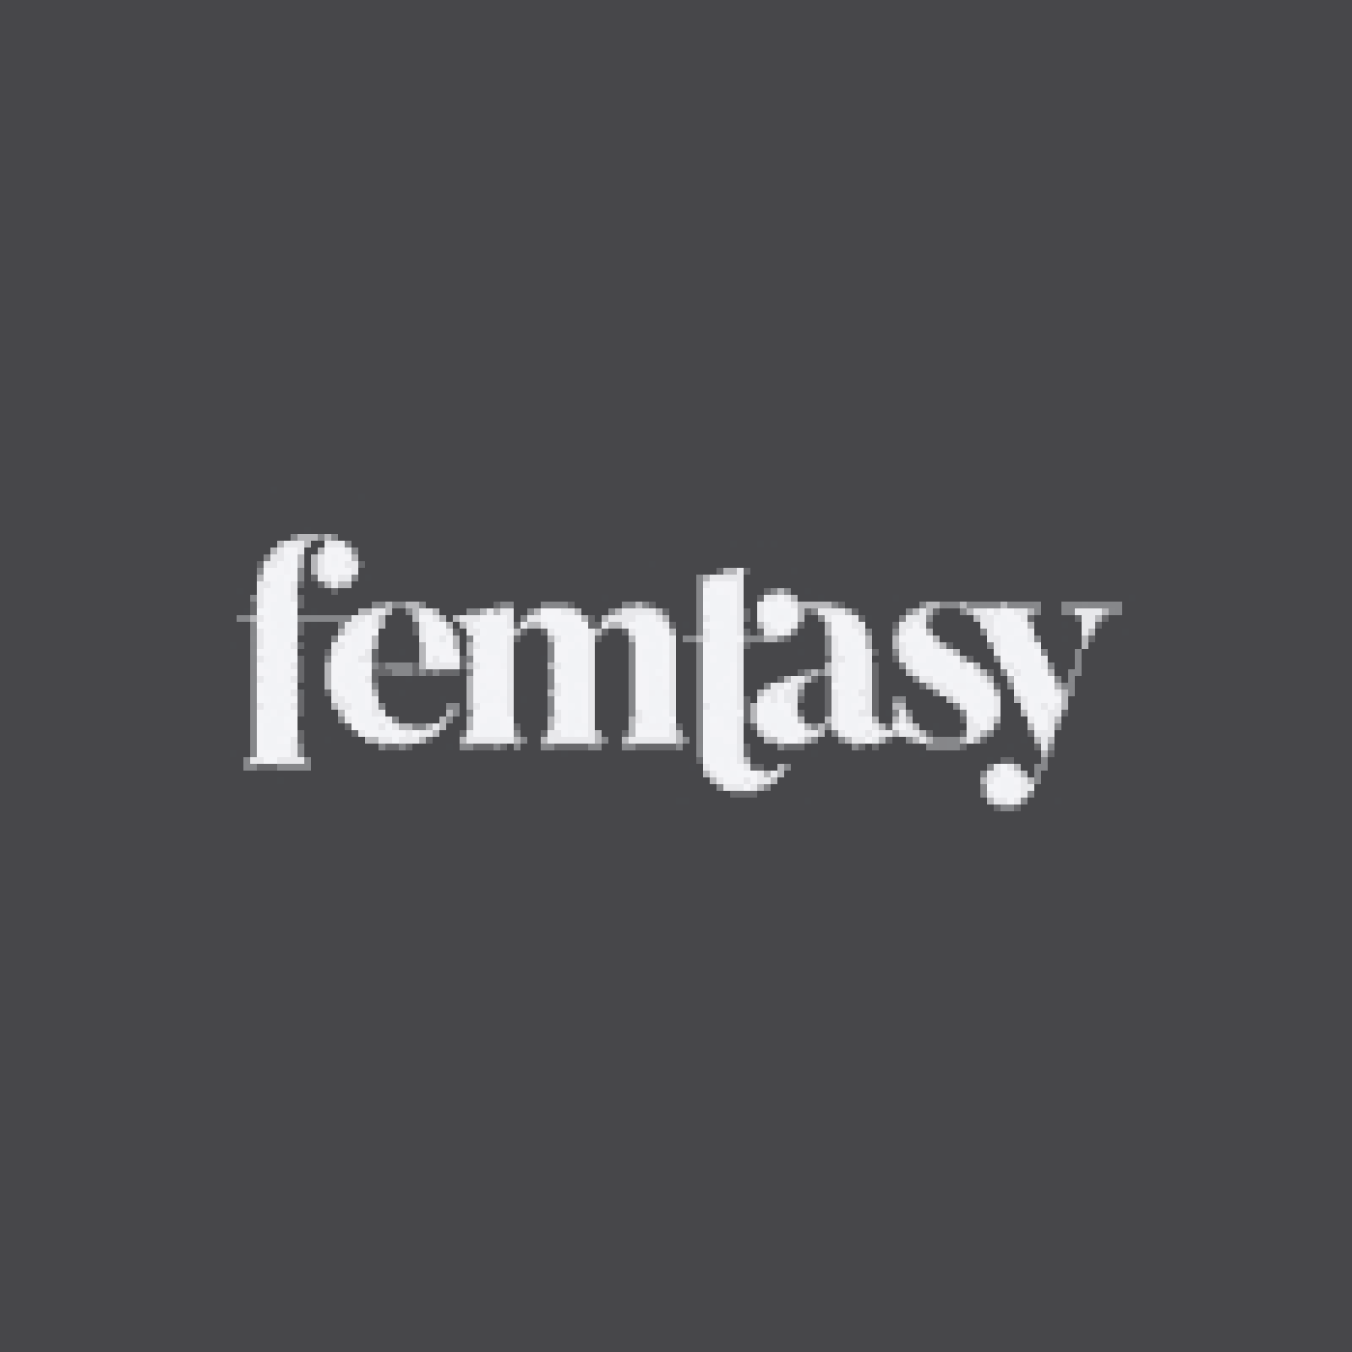 femtasy